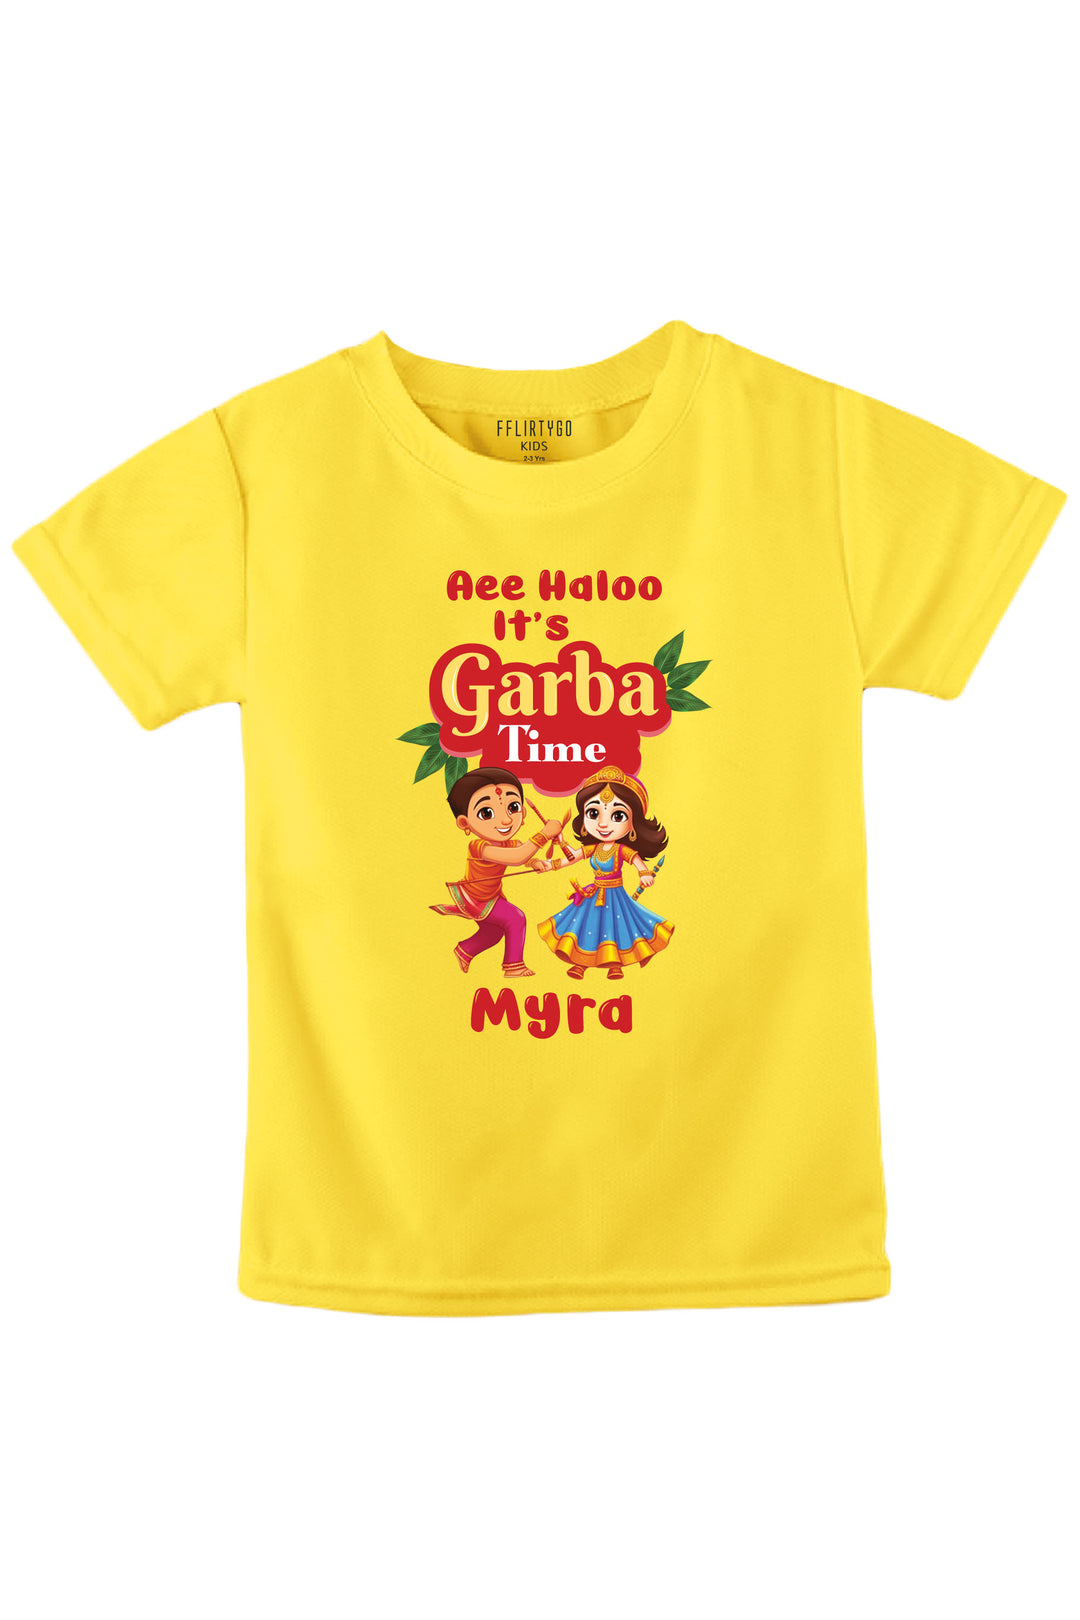 Aee Haloo Garba Time Kids T Shirt w/ Custom Name